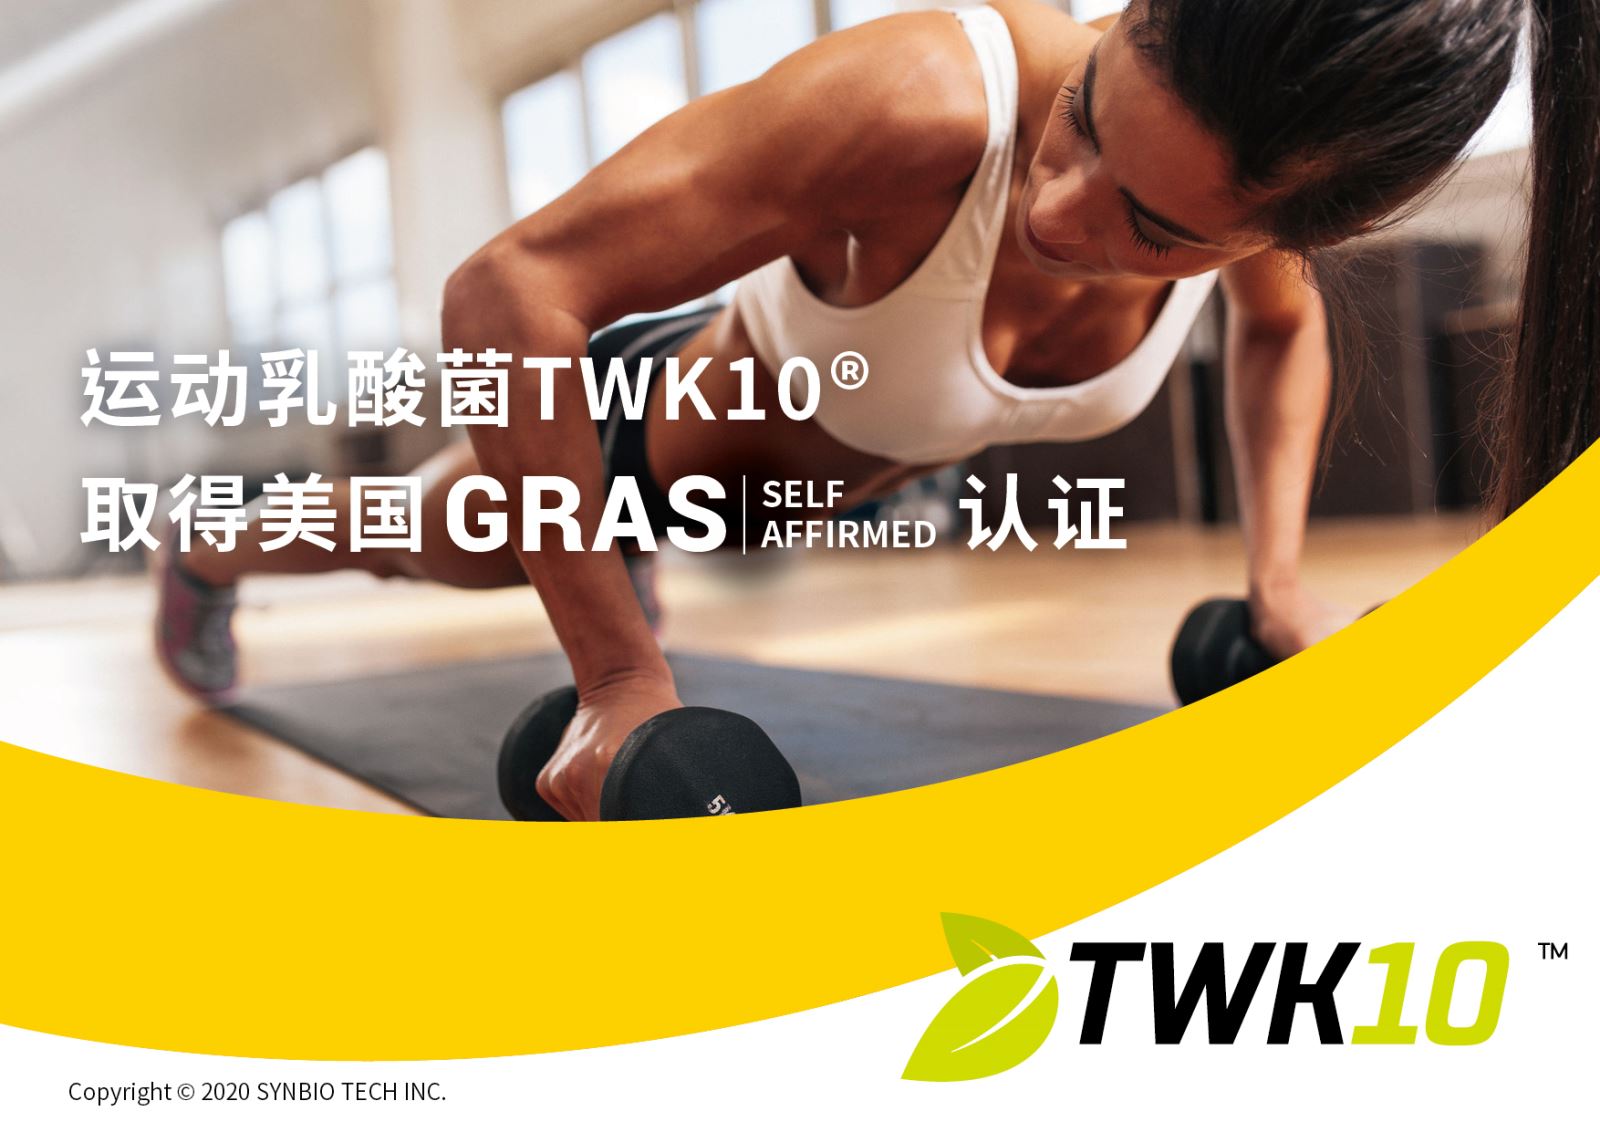 台湾首株运动乳酸菌TWK10取得美国GRAS SELF AFFIRMED认证